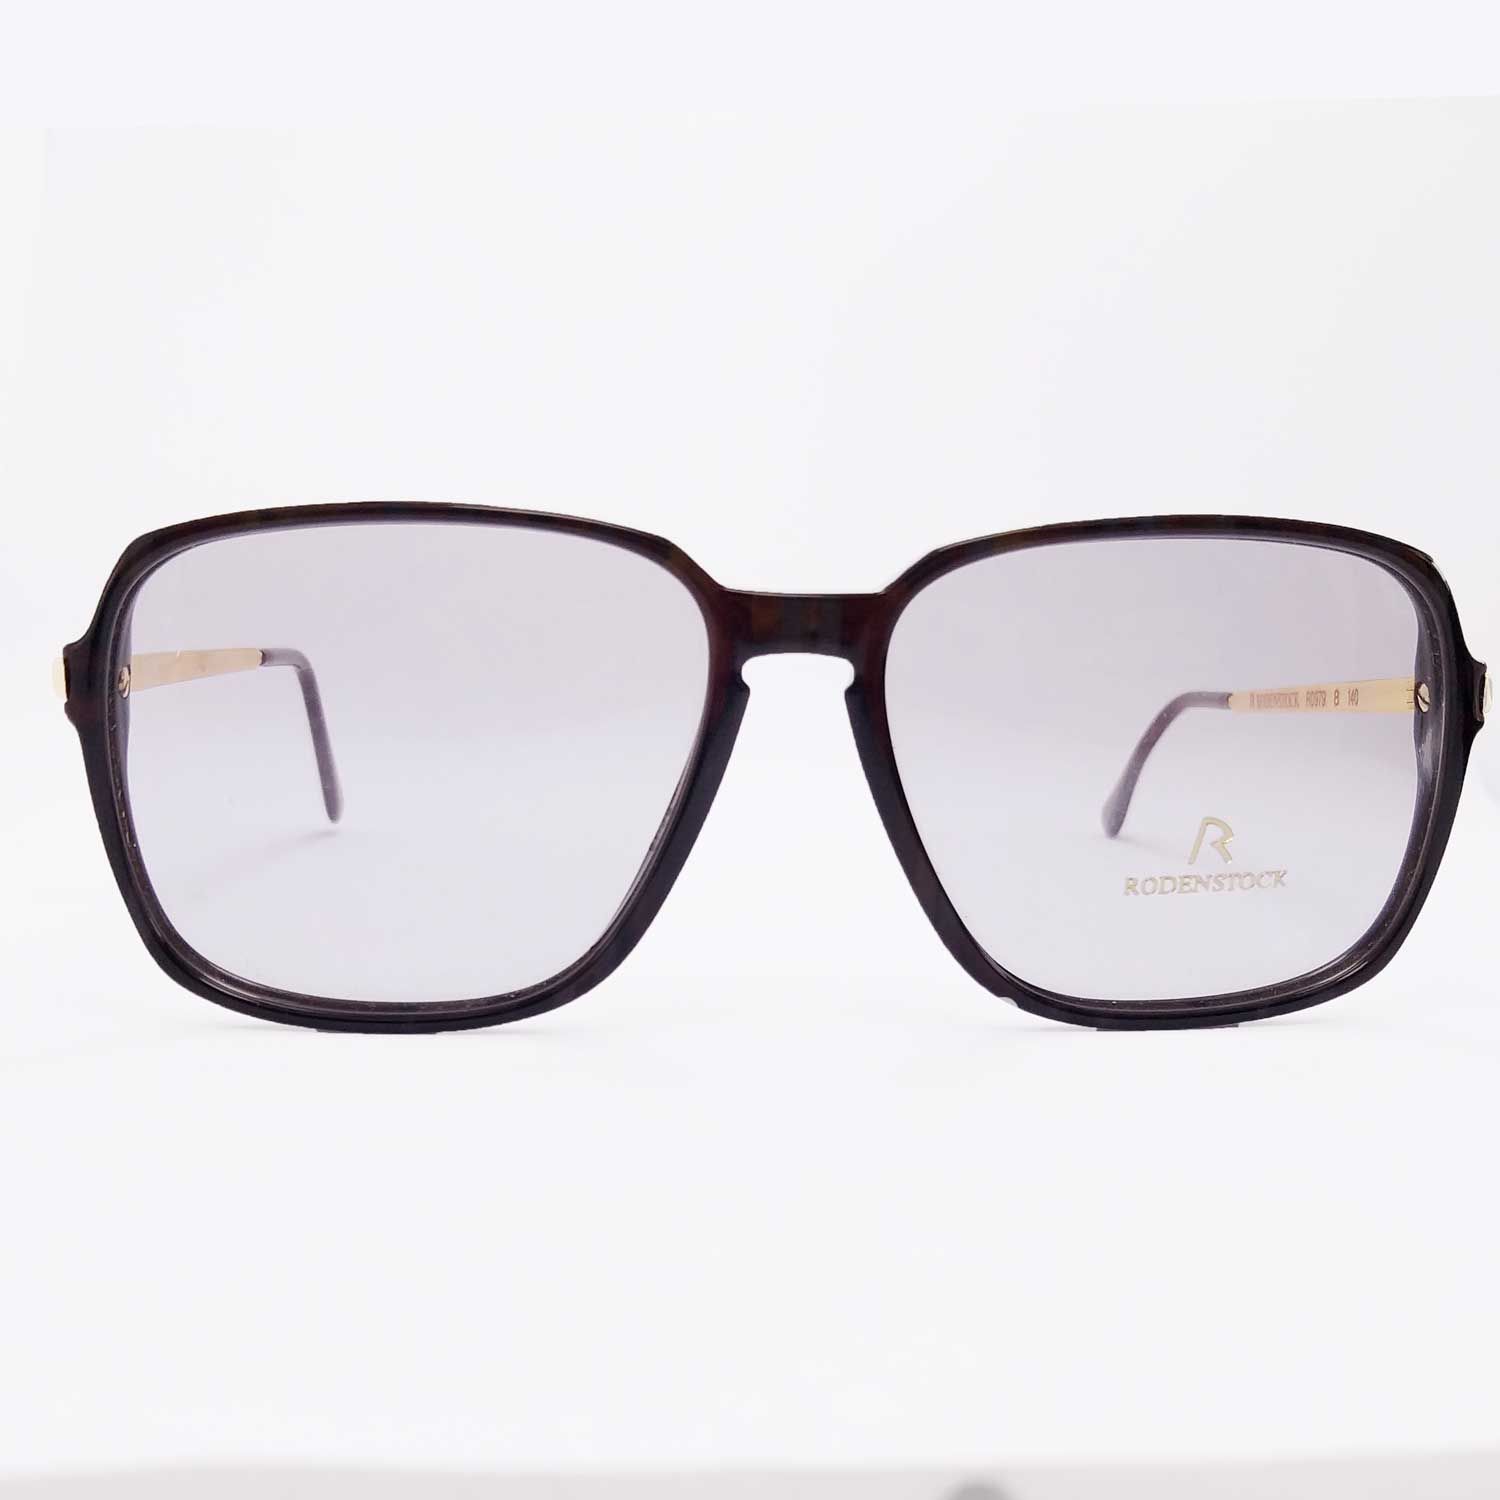 فریم عینک طبی مردانه رودن اشتوک مدل R0979 -  - 7